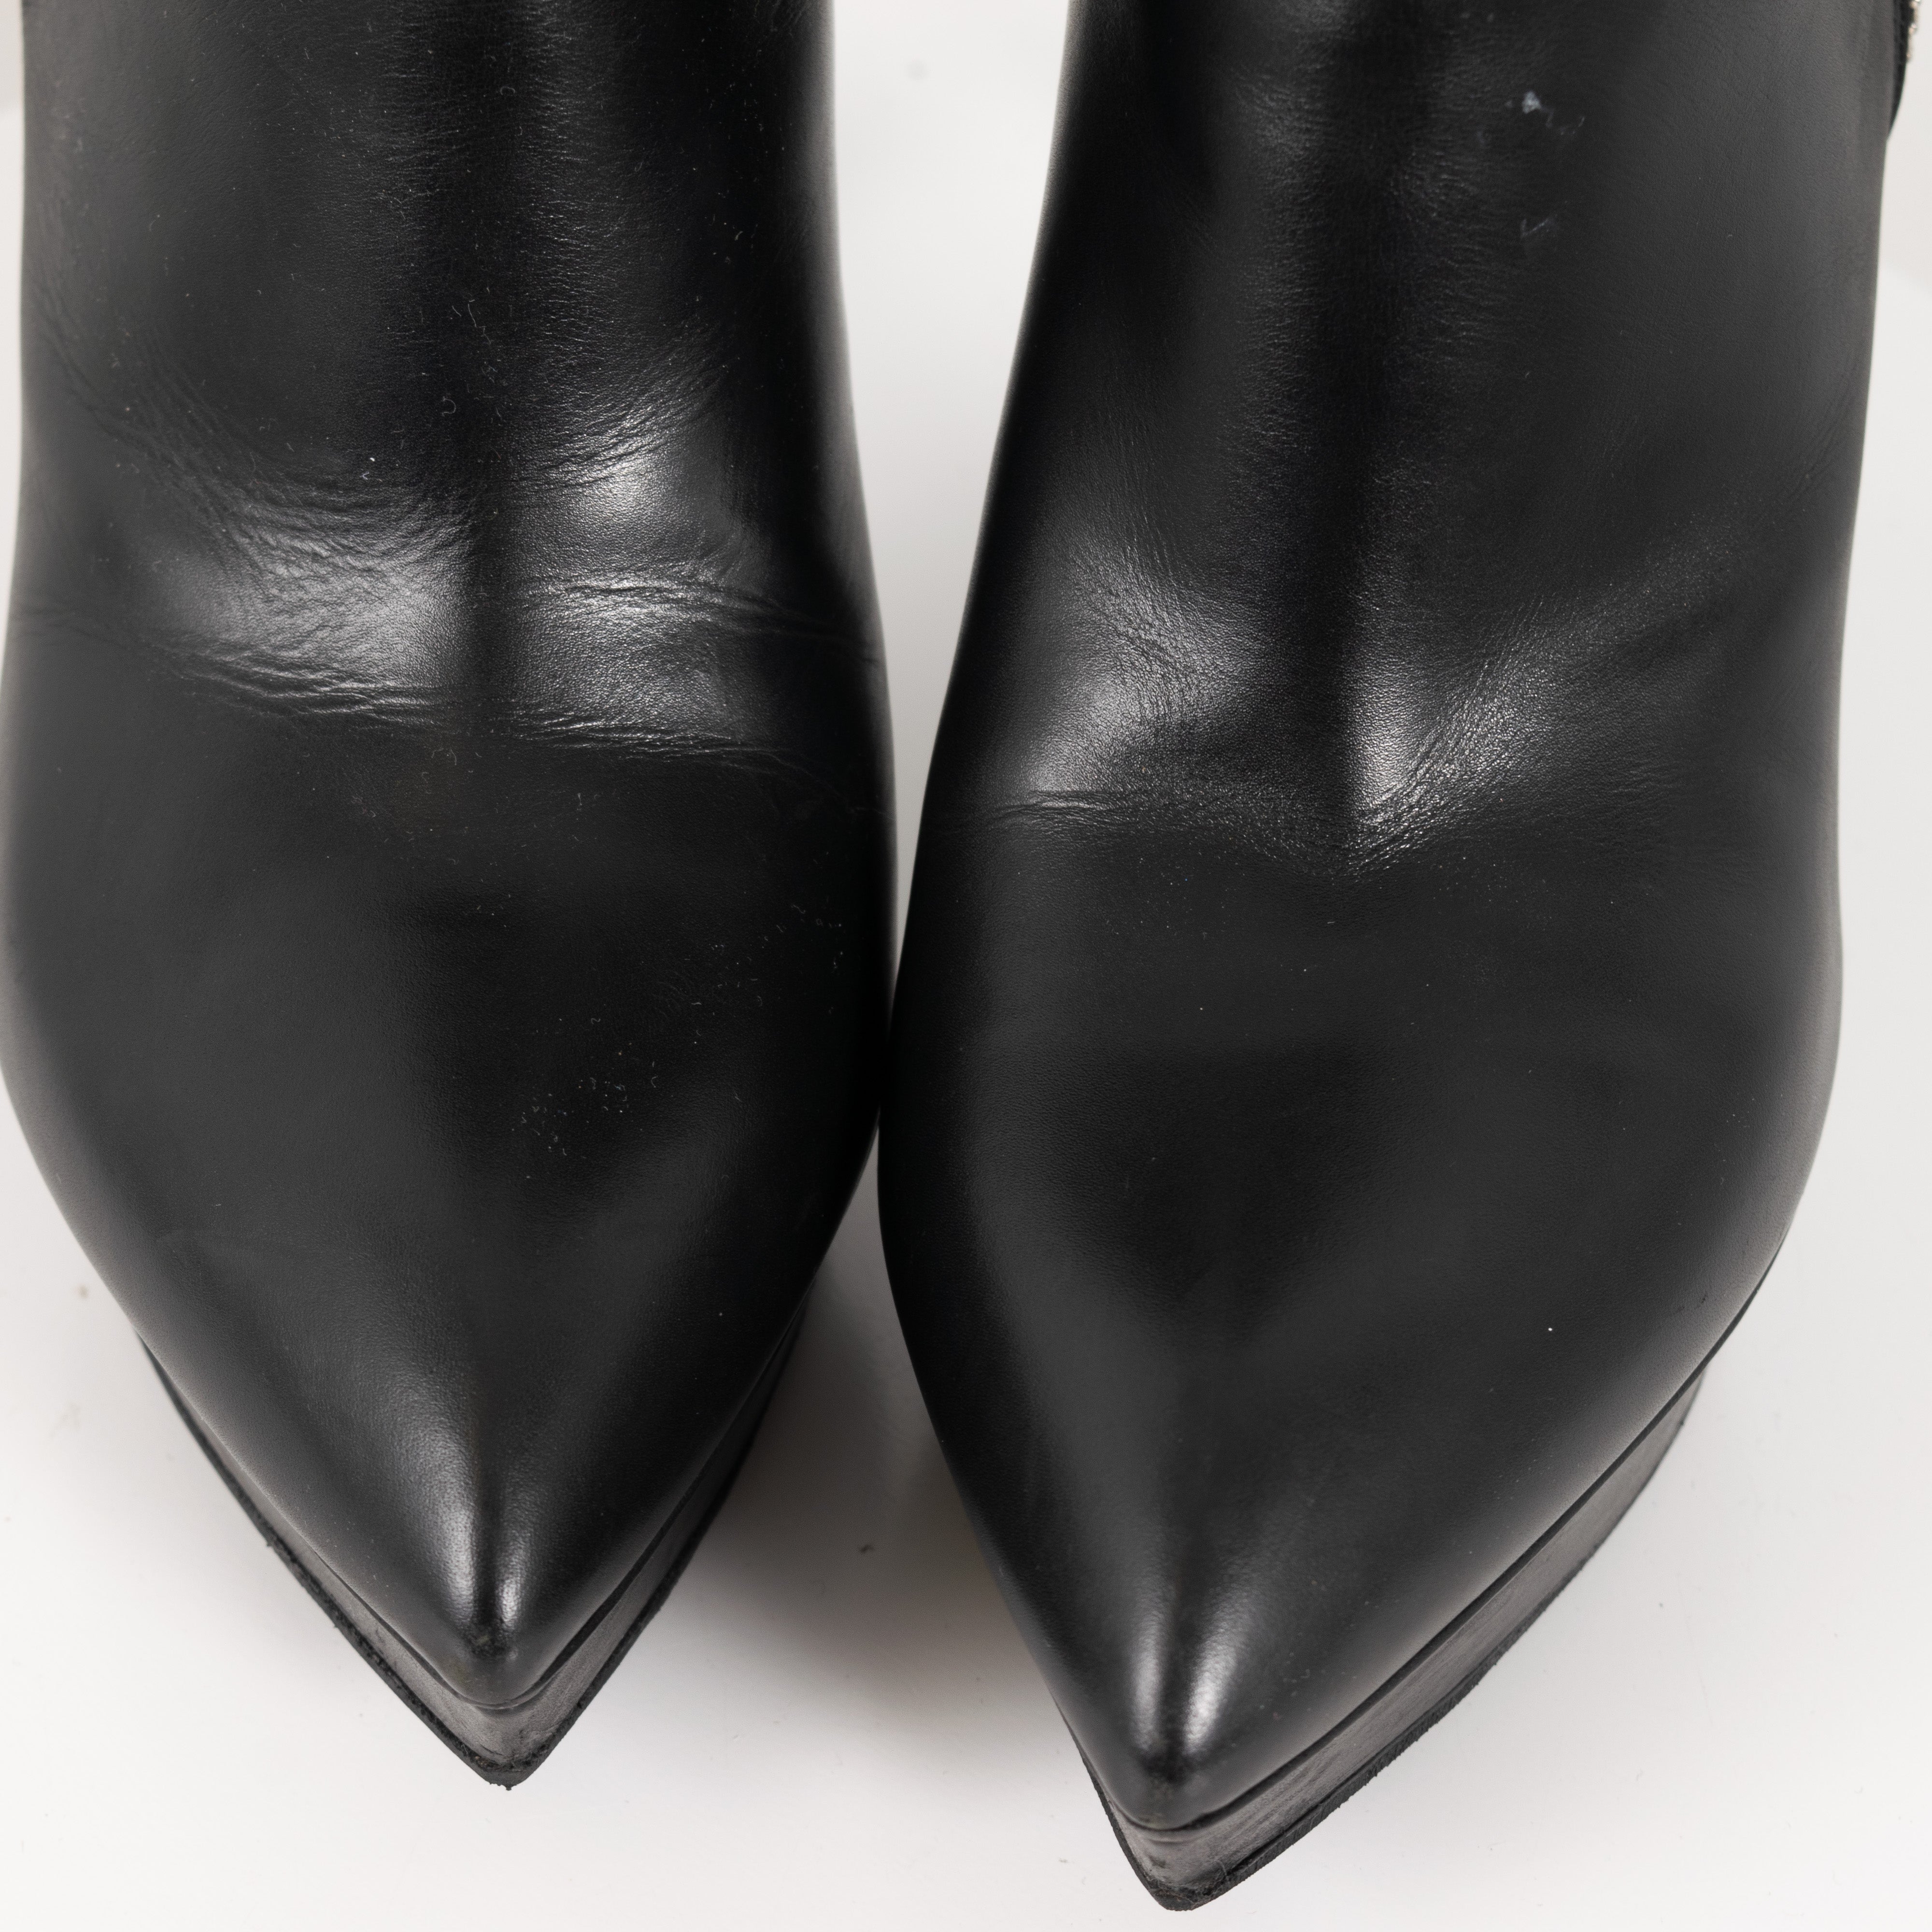 Saint Laurent Paris Black Leather Zip Up Ankle High Heels Women's EU36.5